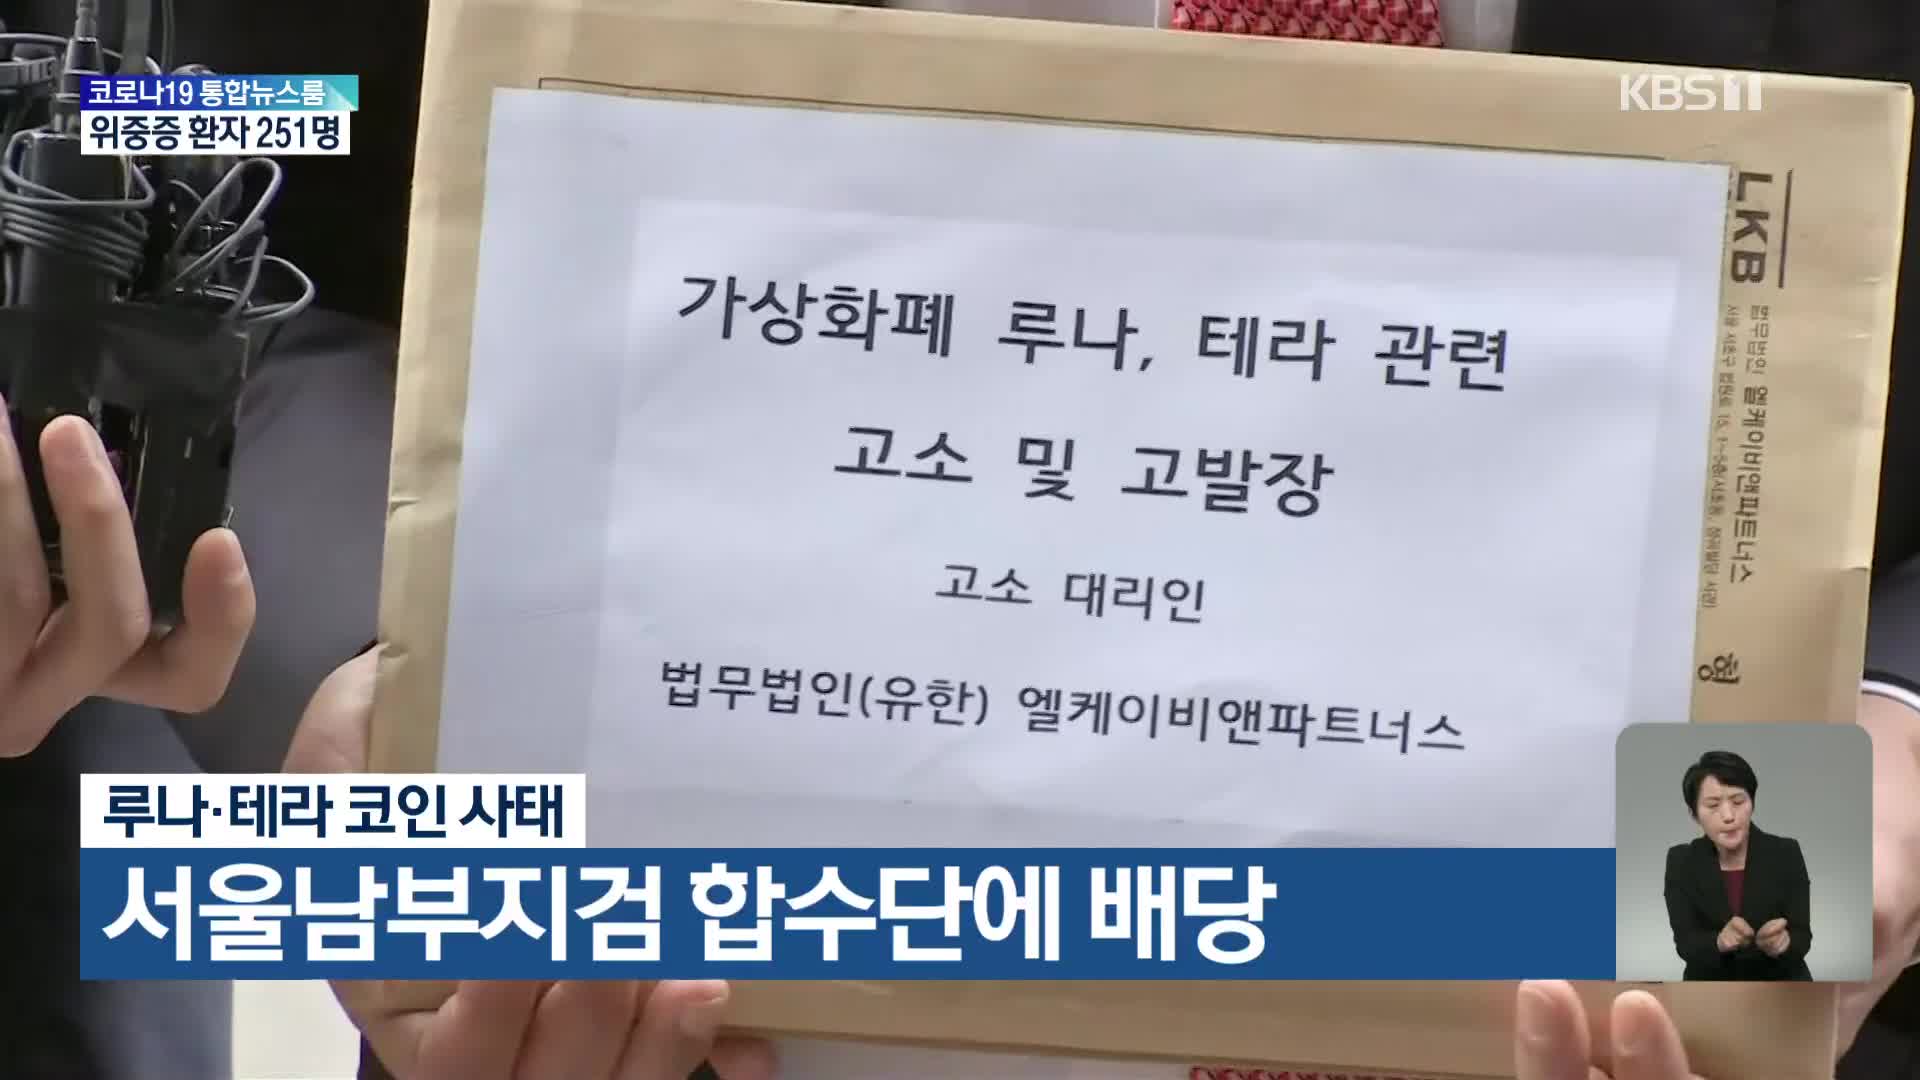 루나·테라 코인 사태, 서울남부지검 합수단에 배당